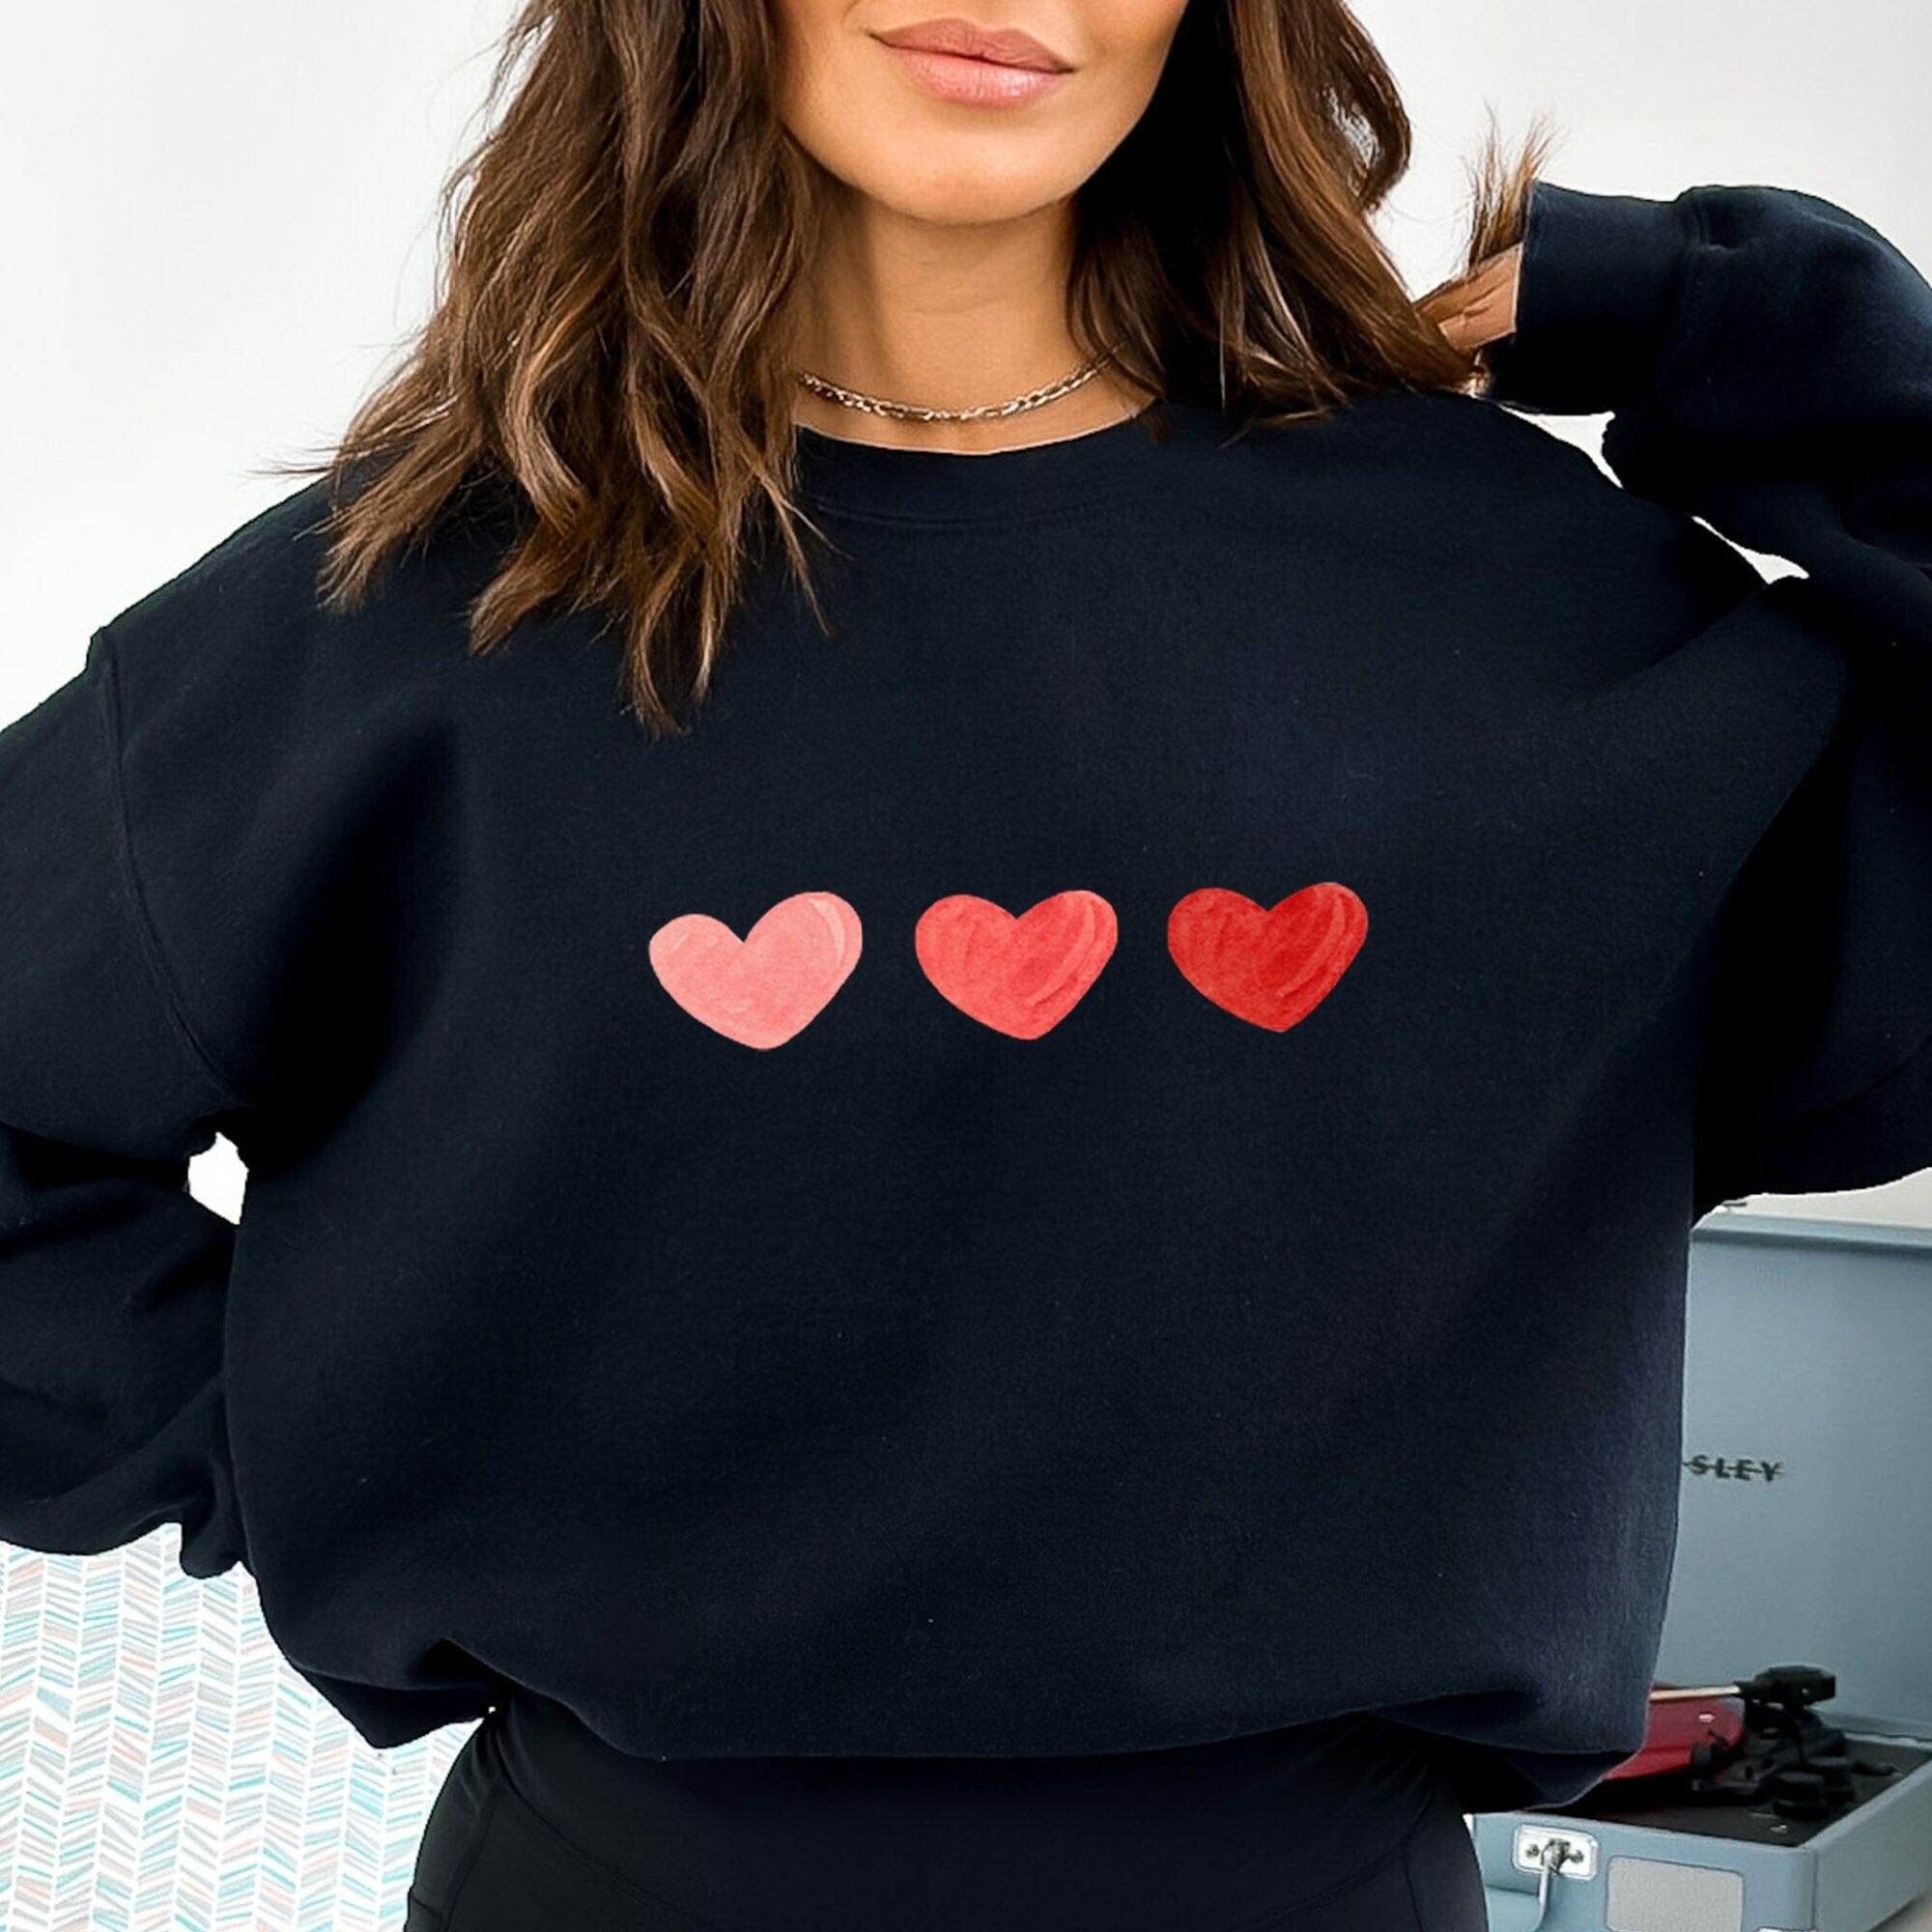 Love Cute Hearts Sweatshirt Valentine'S Days Jumper First Valentine Red Heart T-Shirt